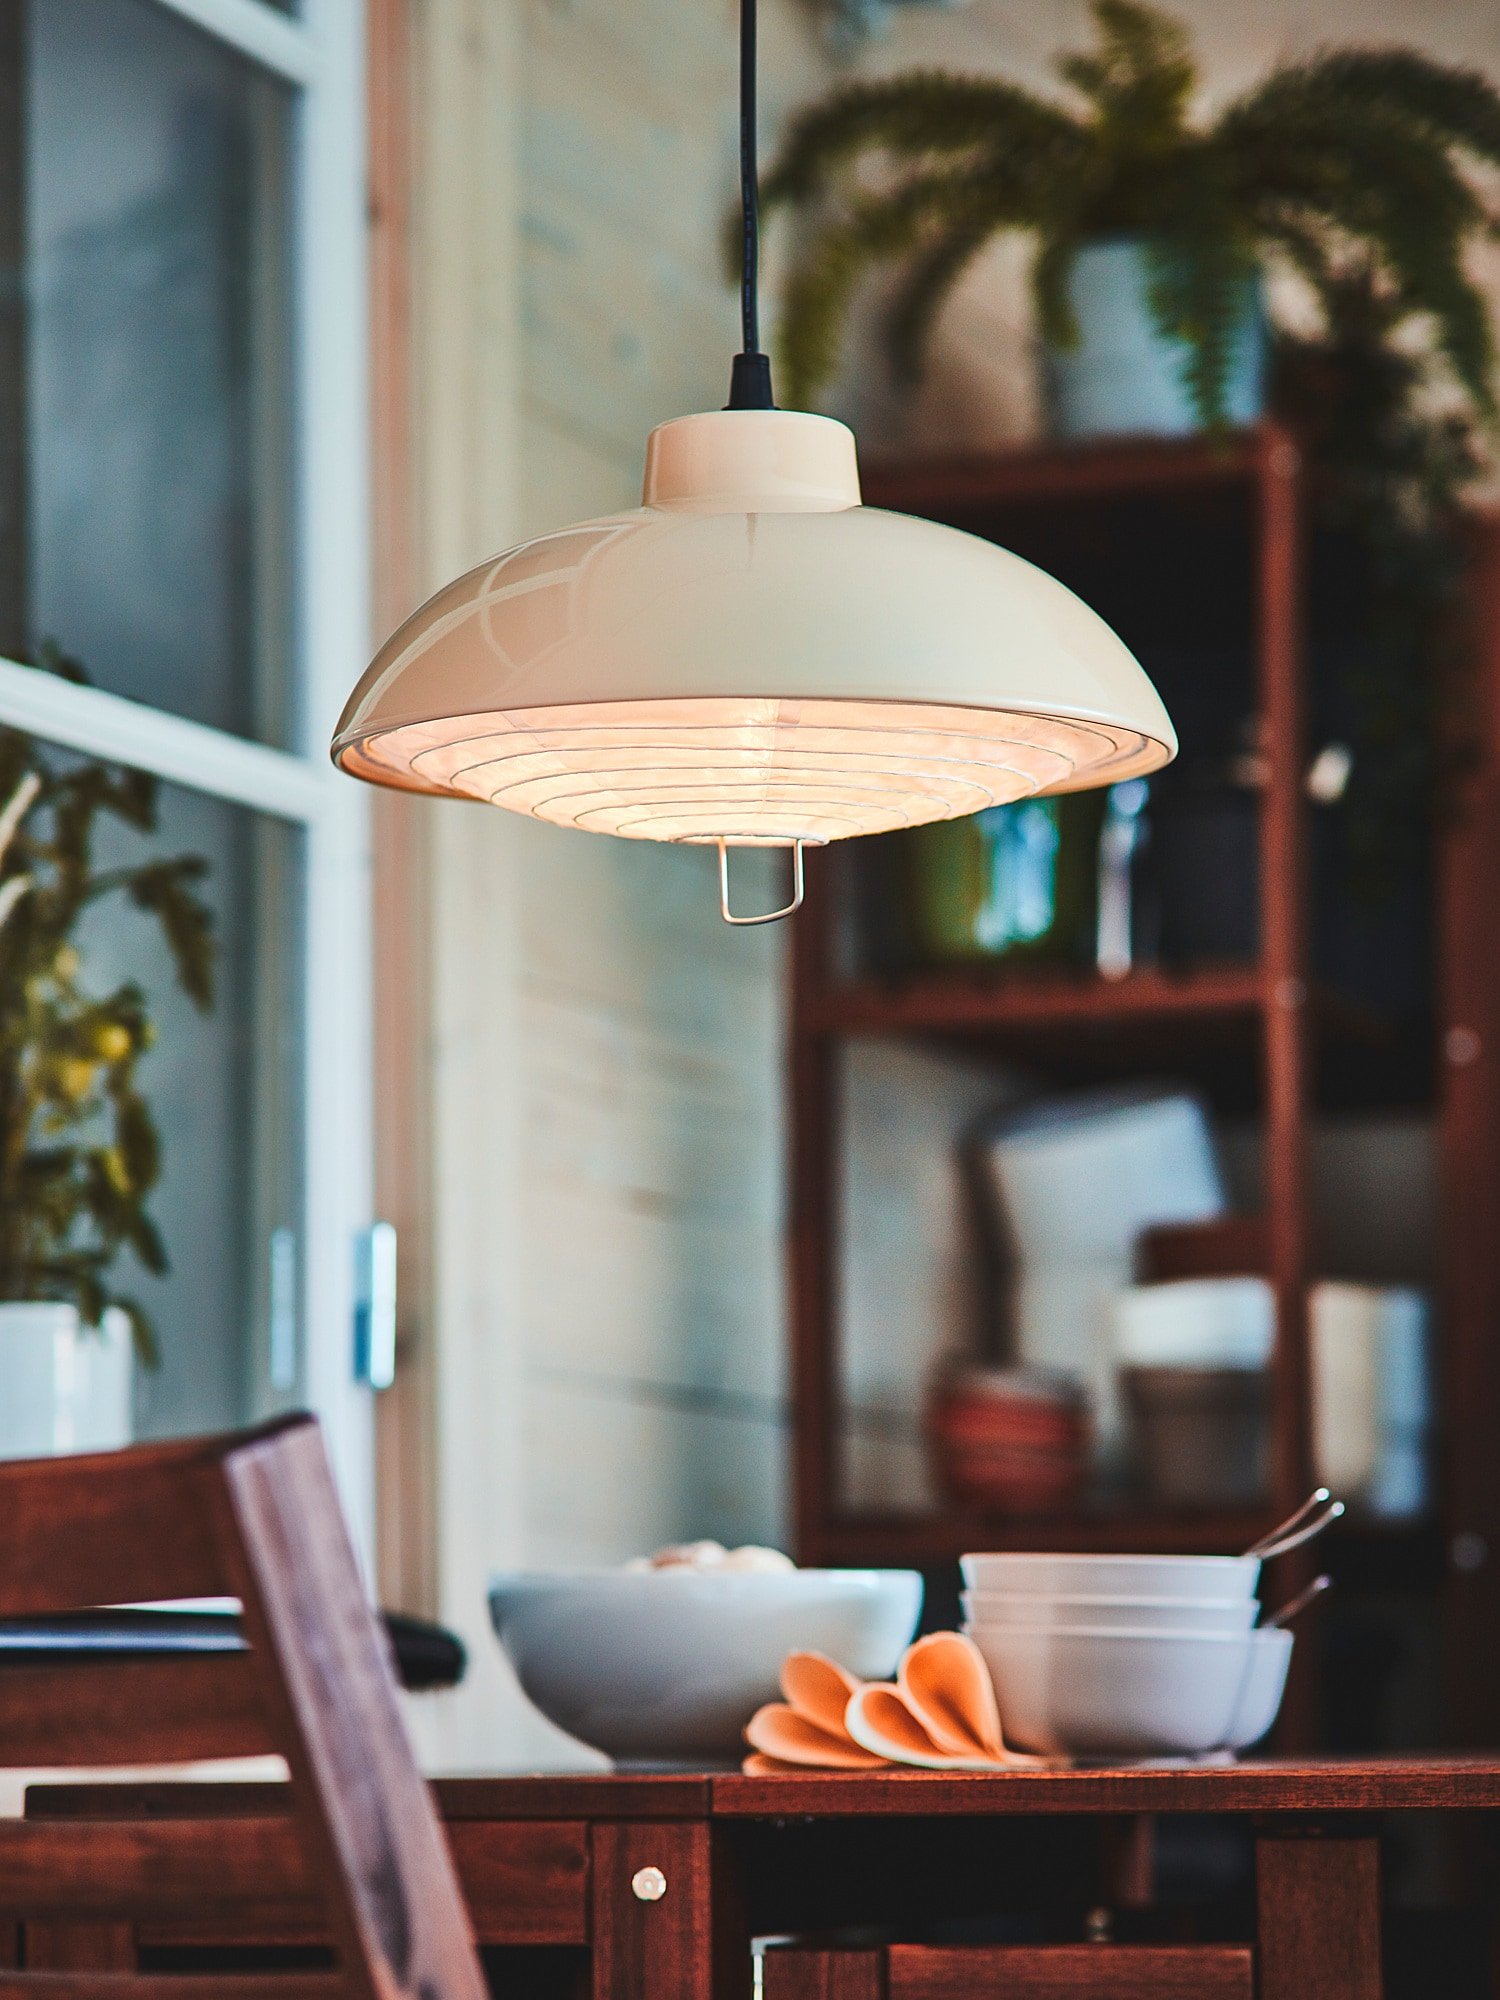 Ikea lanza una lámpara solar para las cenas veraniegas que no